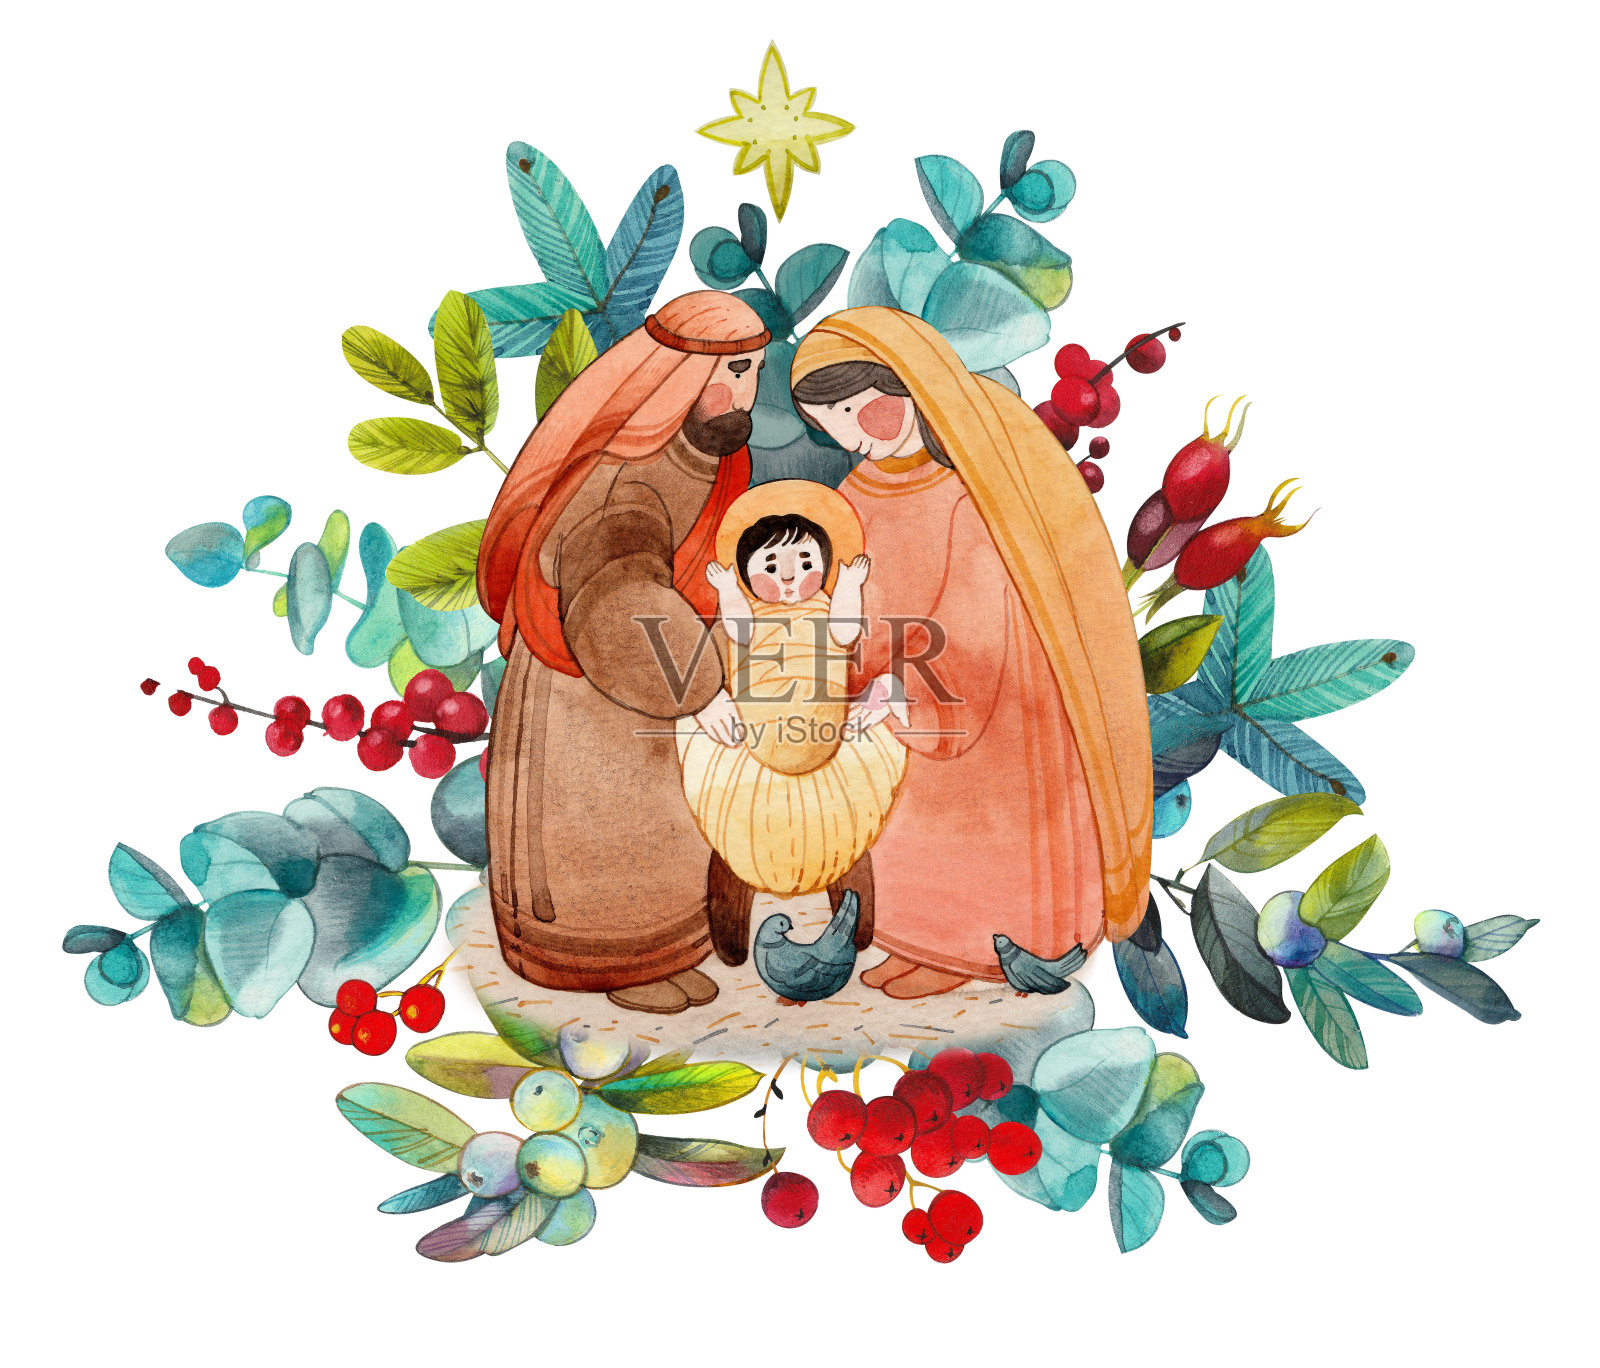 基督教圣诞节手绘水彩画插图“耶稣诞生场景”:玛丽，约瑟夫，婴儿耶稣基督在马槽和伯利恒的星星在花卉框。圣诞节的问候，出版物插画图片素材